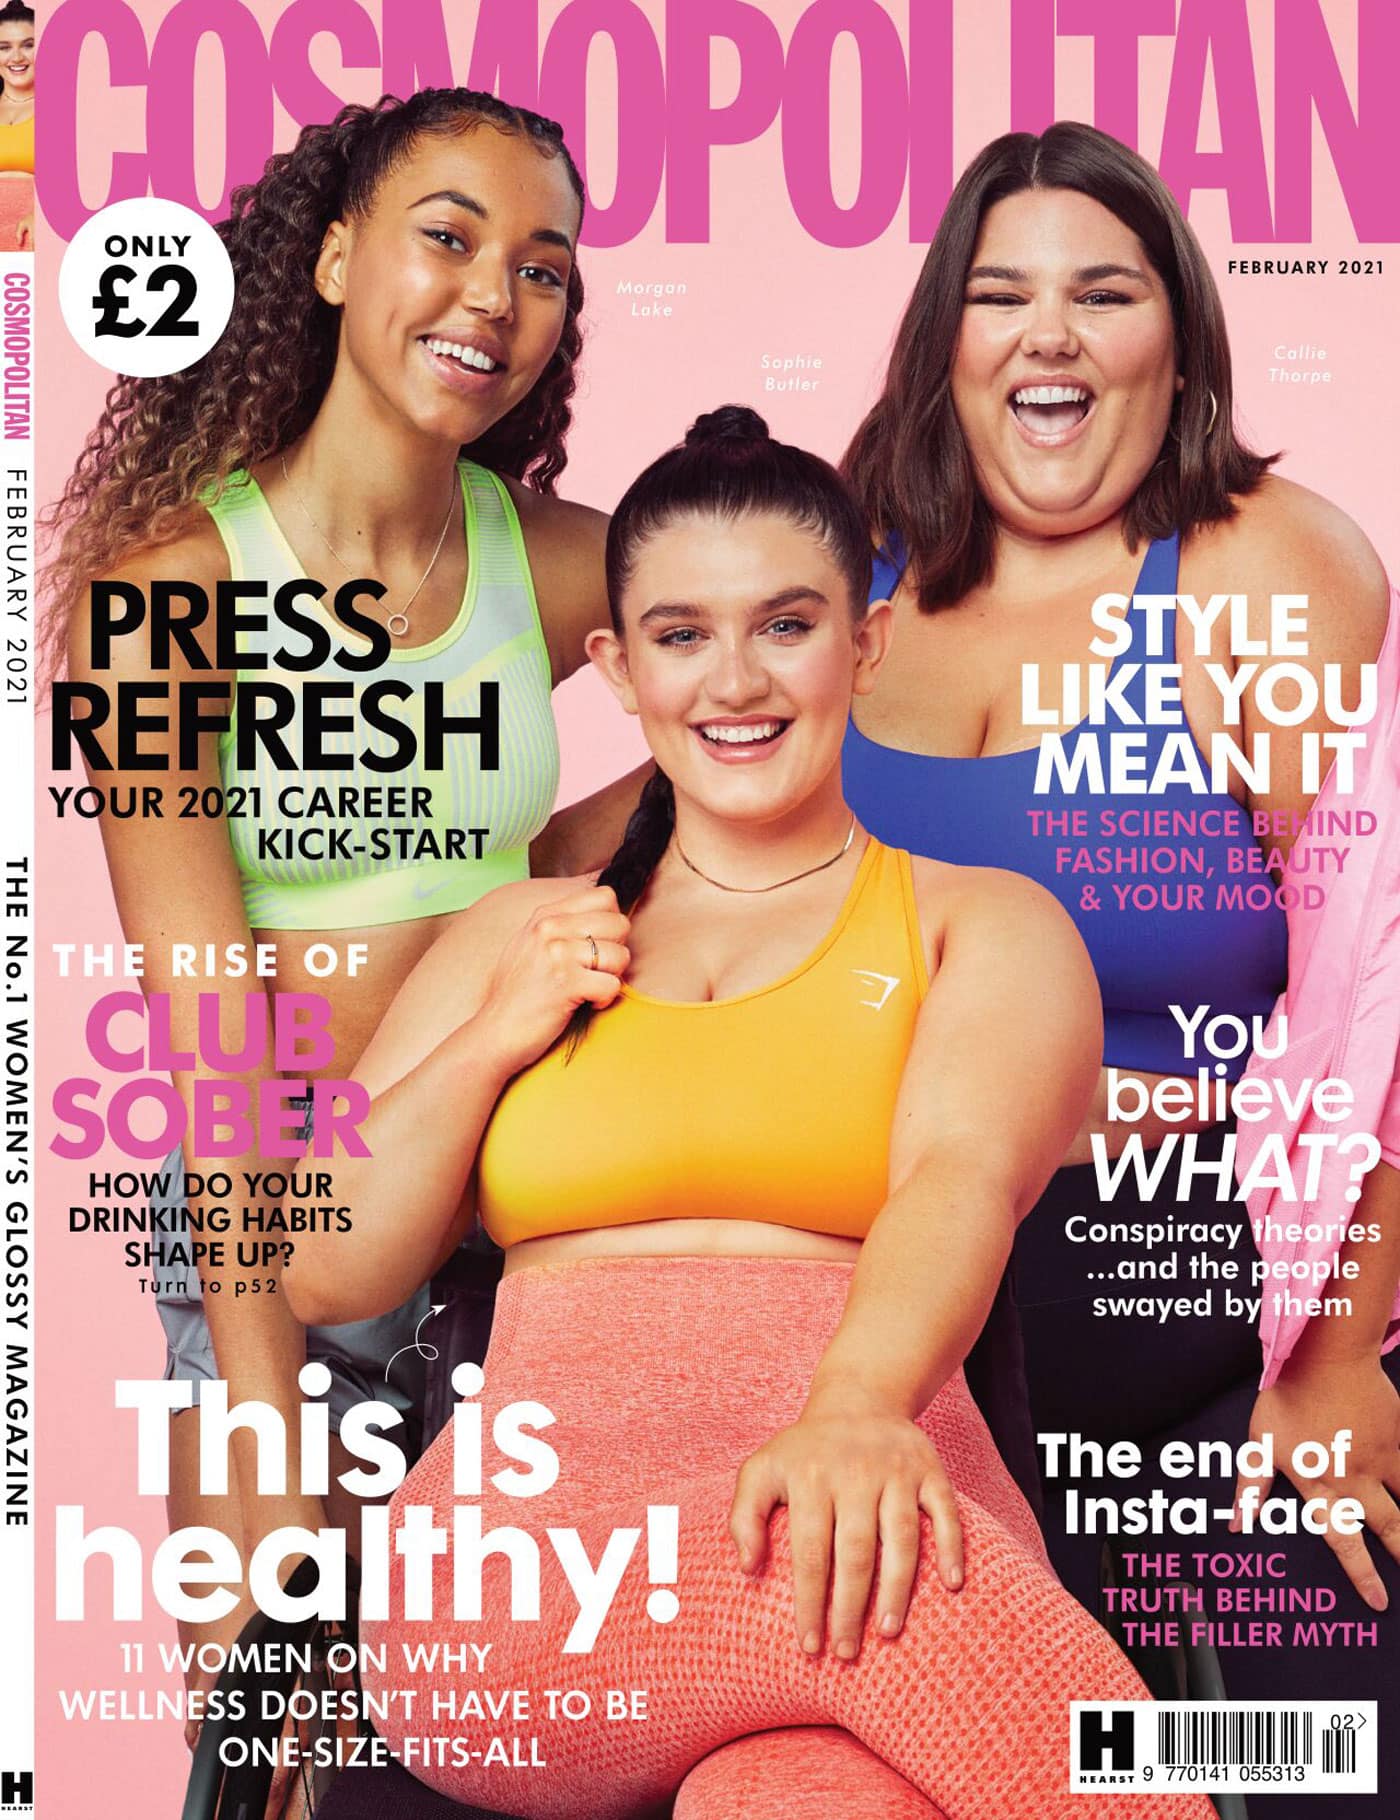 Reale Frauen auf dem Cover der Cosmopolitan // HIMBEER